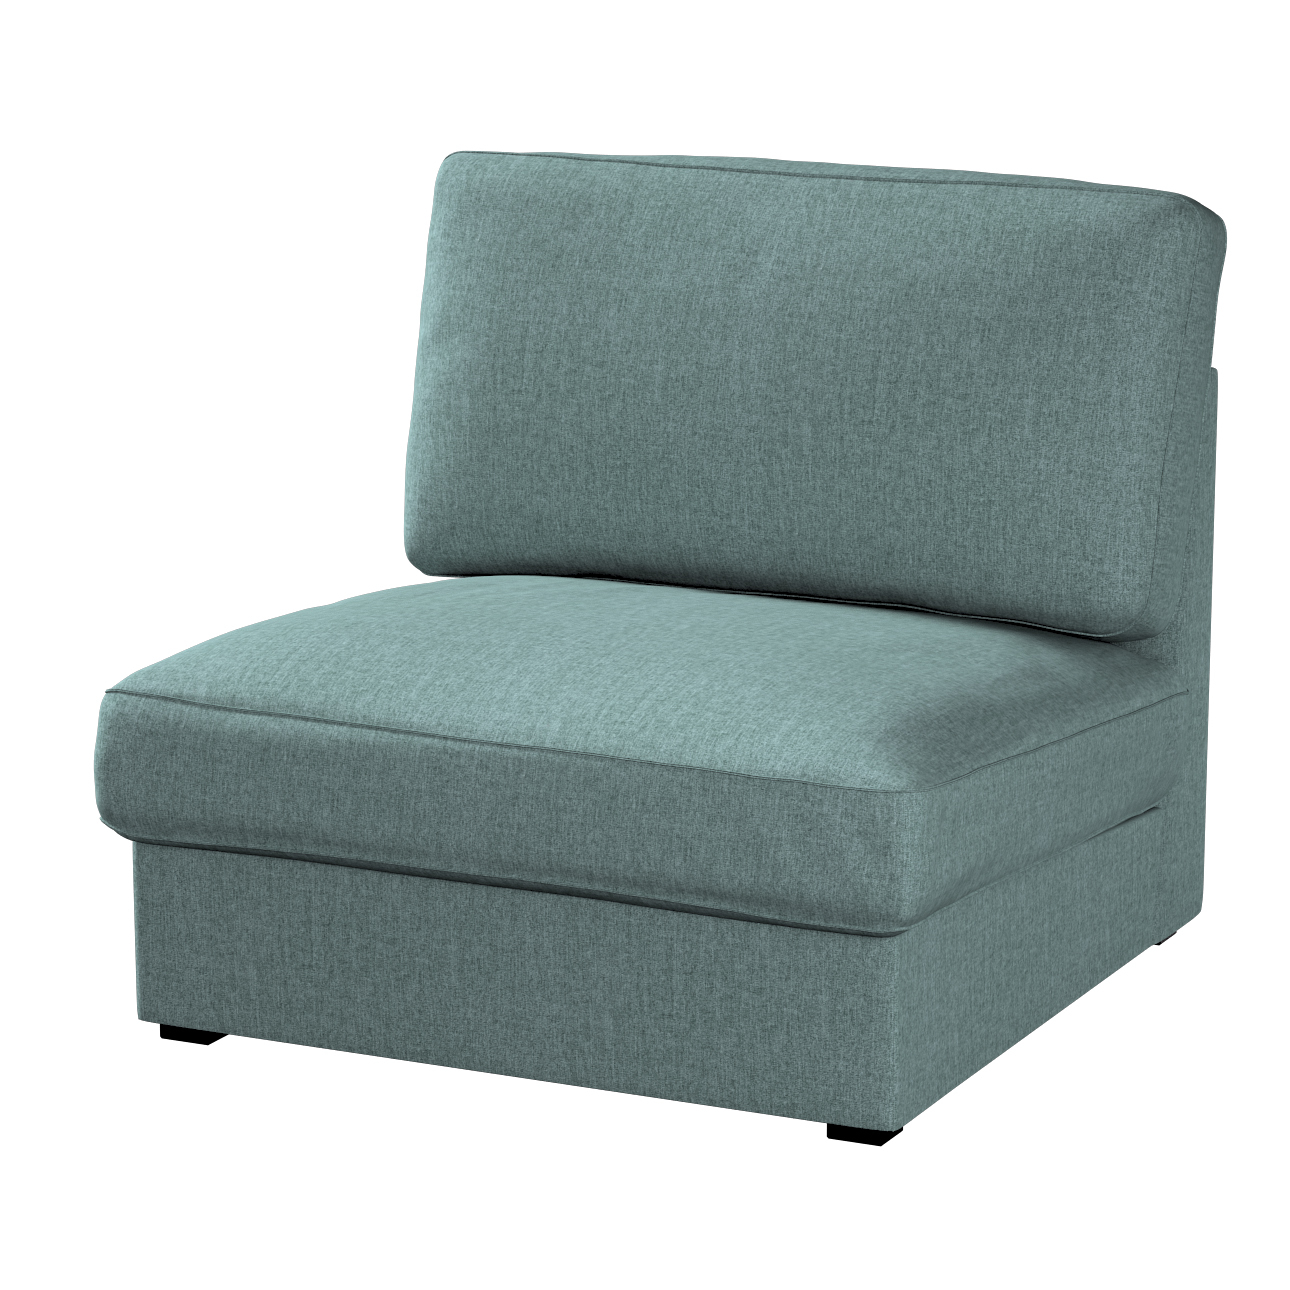 Bezug für Kivik Sessel nicht ausklappbar, grau- blau, Bezug für Sessel Kivi günstig online kaufen